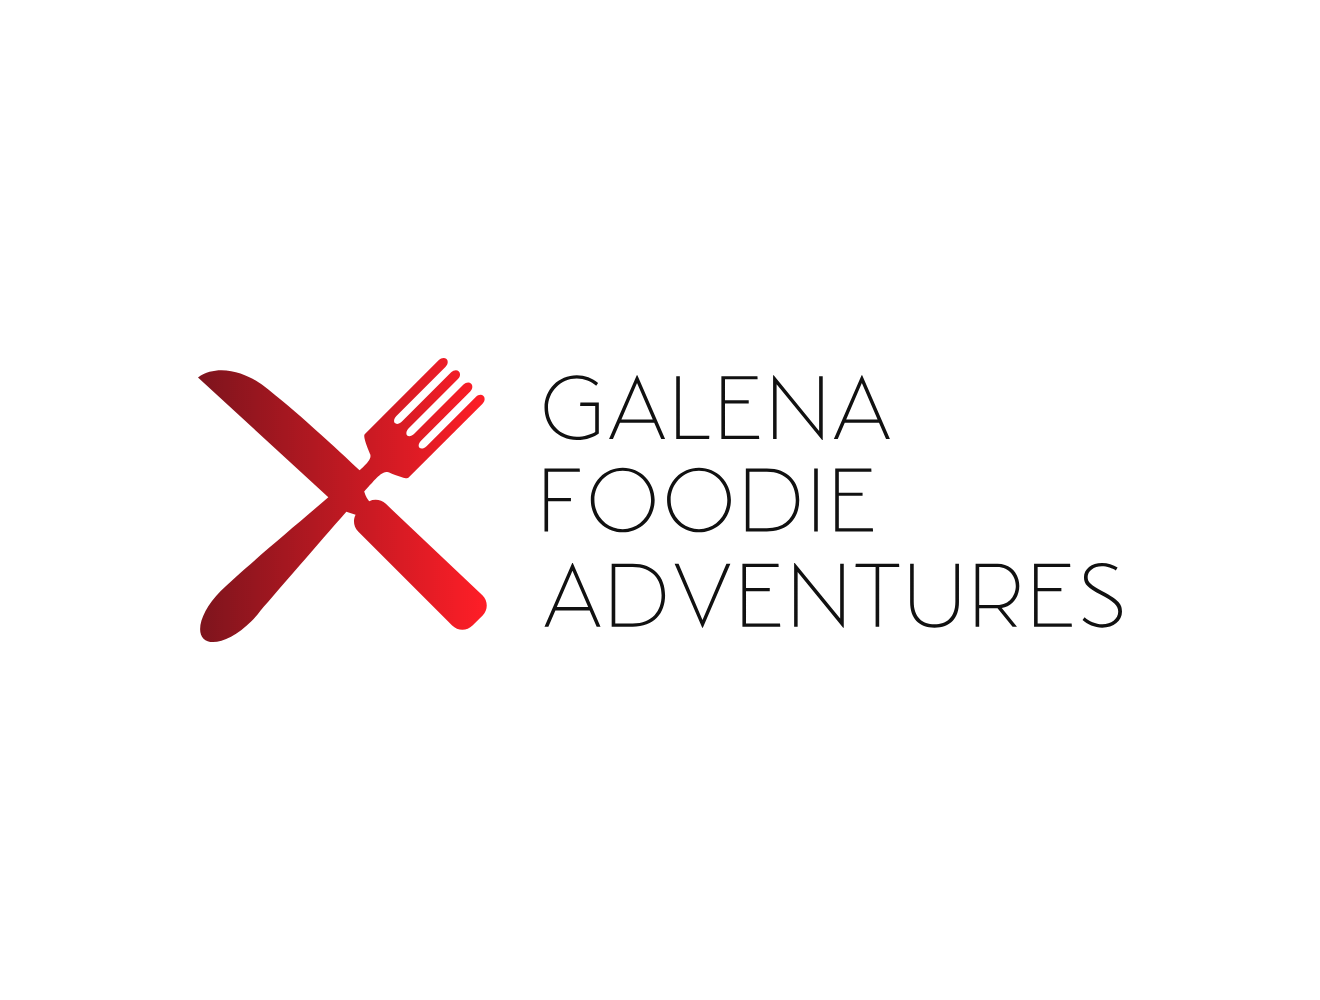 Galena Foodie Adventures